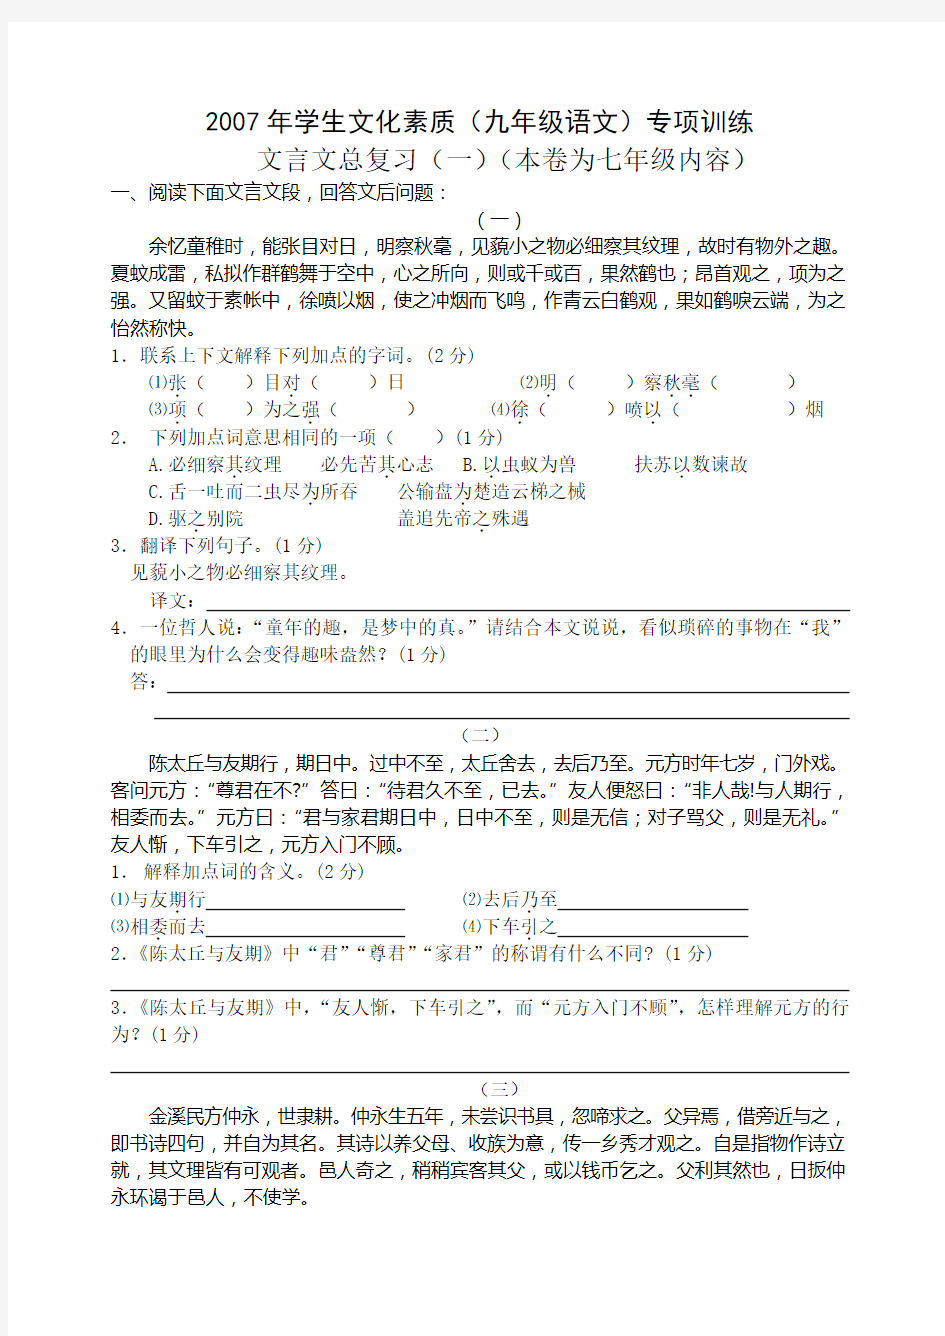 中国文学史重点归纳(袁行霈主编)高等教育出版社2003版